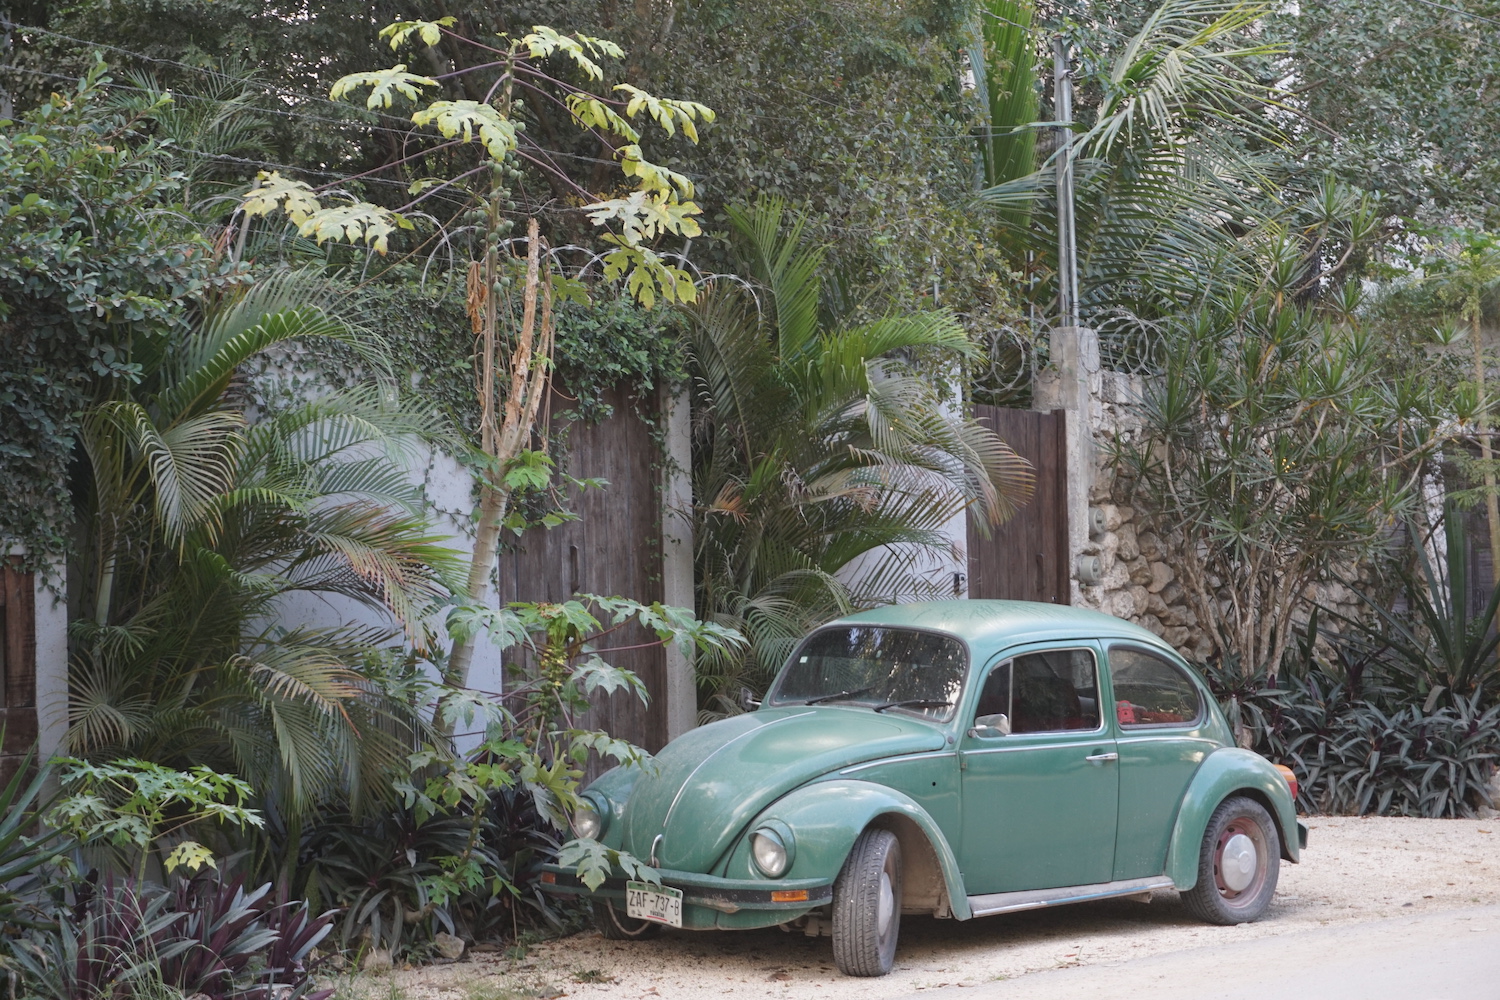 El frente de un VW Beetle verde clásico en México, la pared frontal de una casa y palmeras visibles en el fondo.